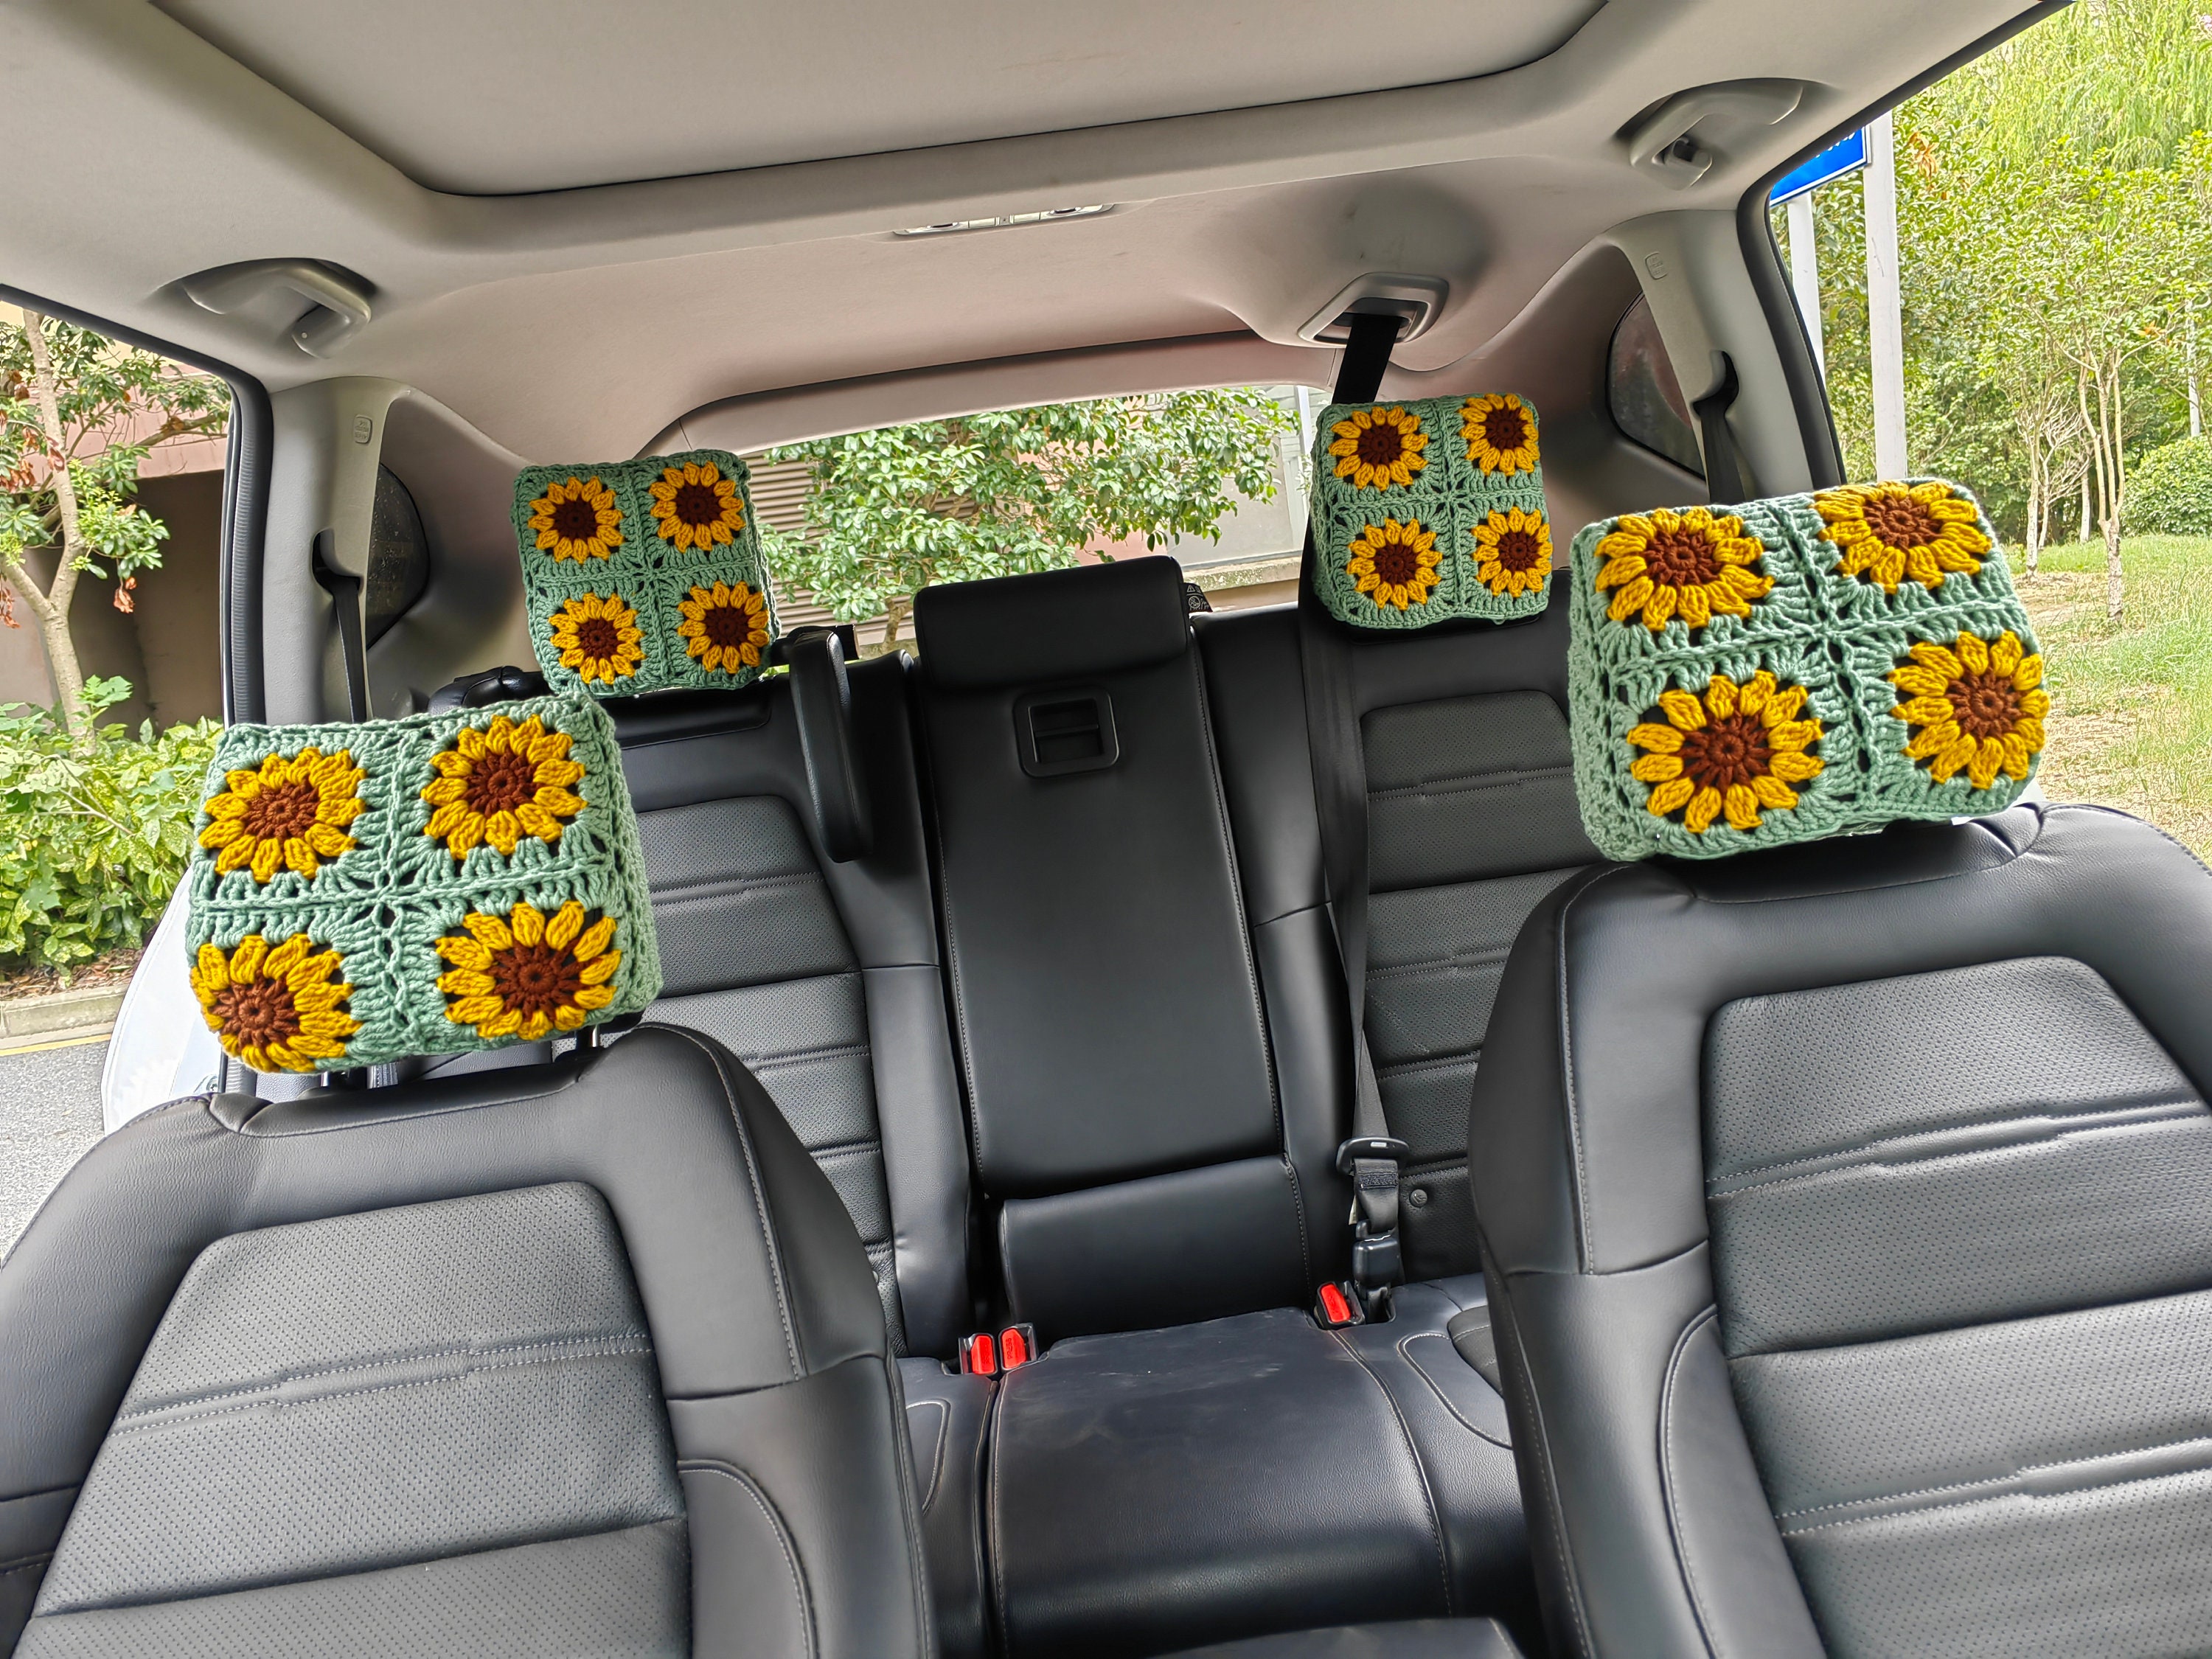 2er Set Autositz Haken, gehäkelte Sonnenblume Auto Kopfstütze